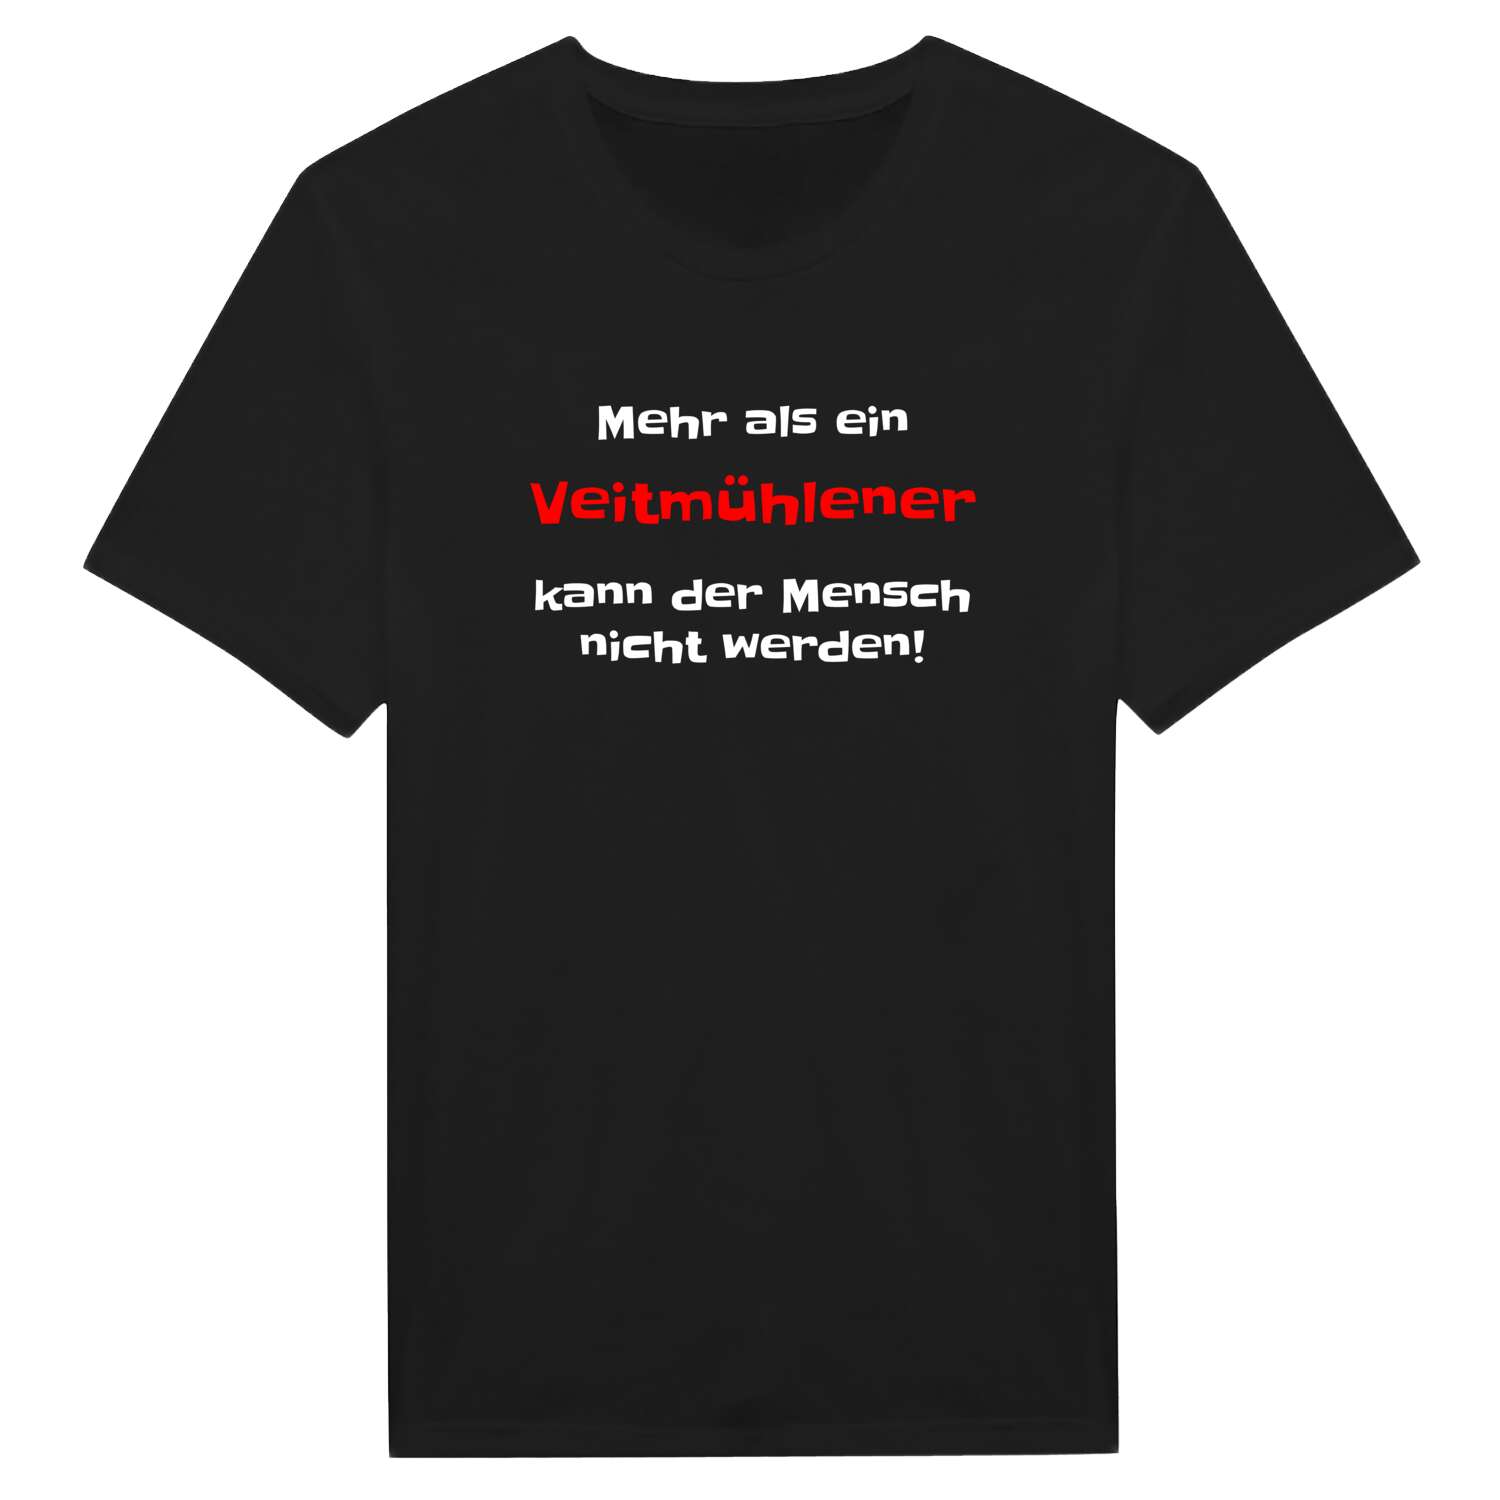 Veitmühle T-Shirt »Mehr als ein«